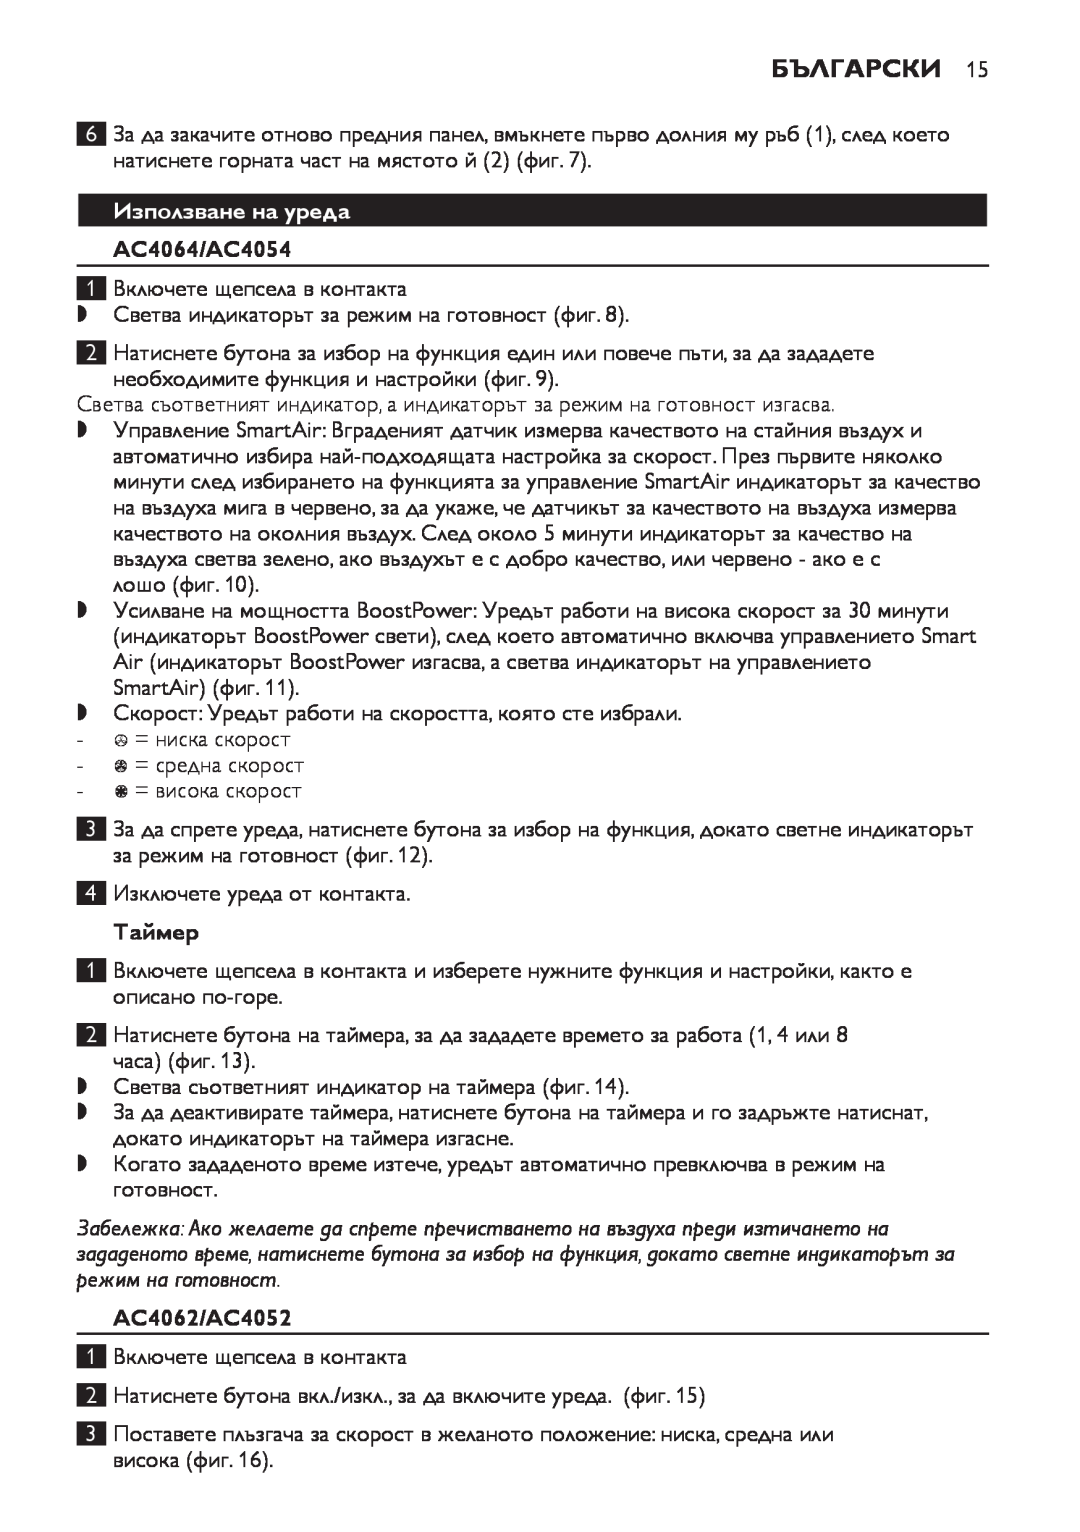 Philips manual Български, Използване на уреда, Таймер, AC4064/AC4054, AC4062/AC4052 